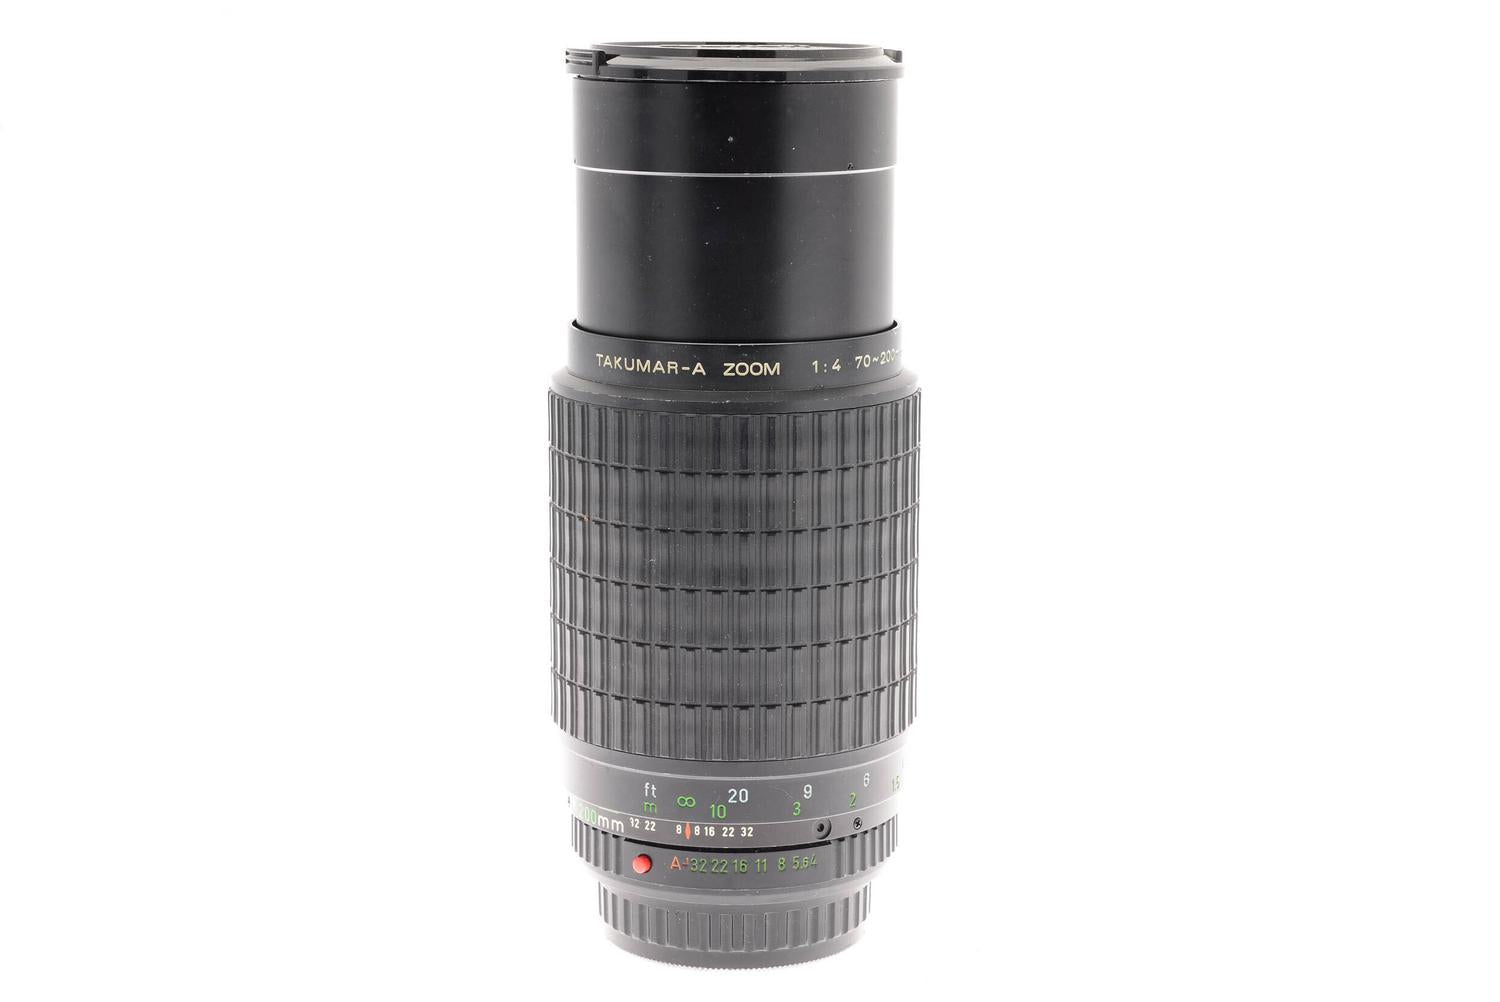 Pentax 70-200mm f4 Takumar-A - Lens